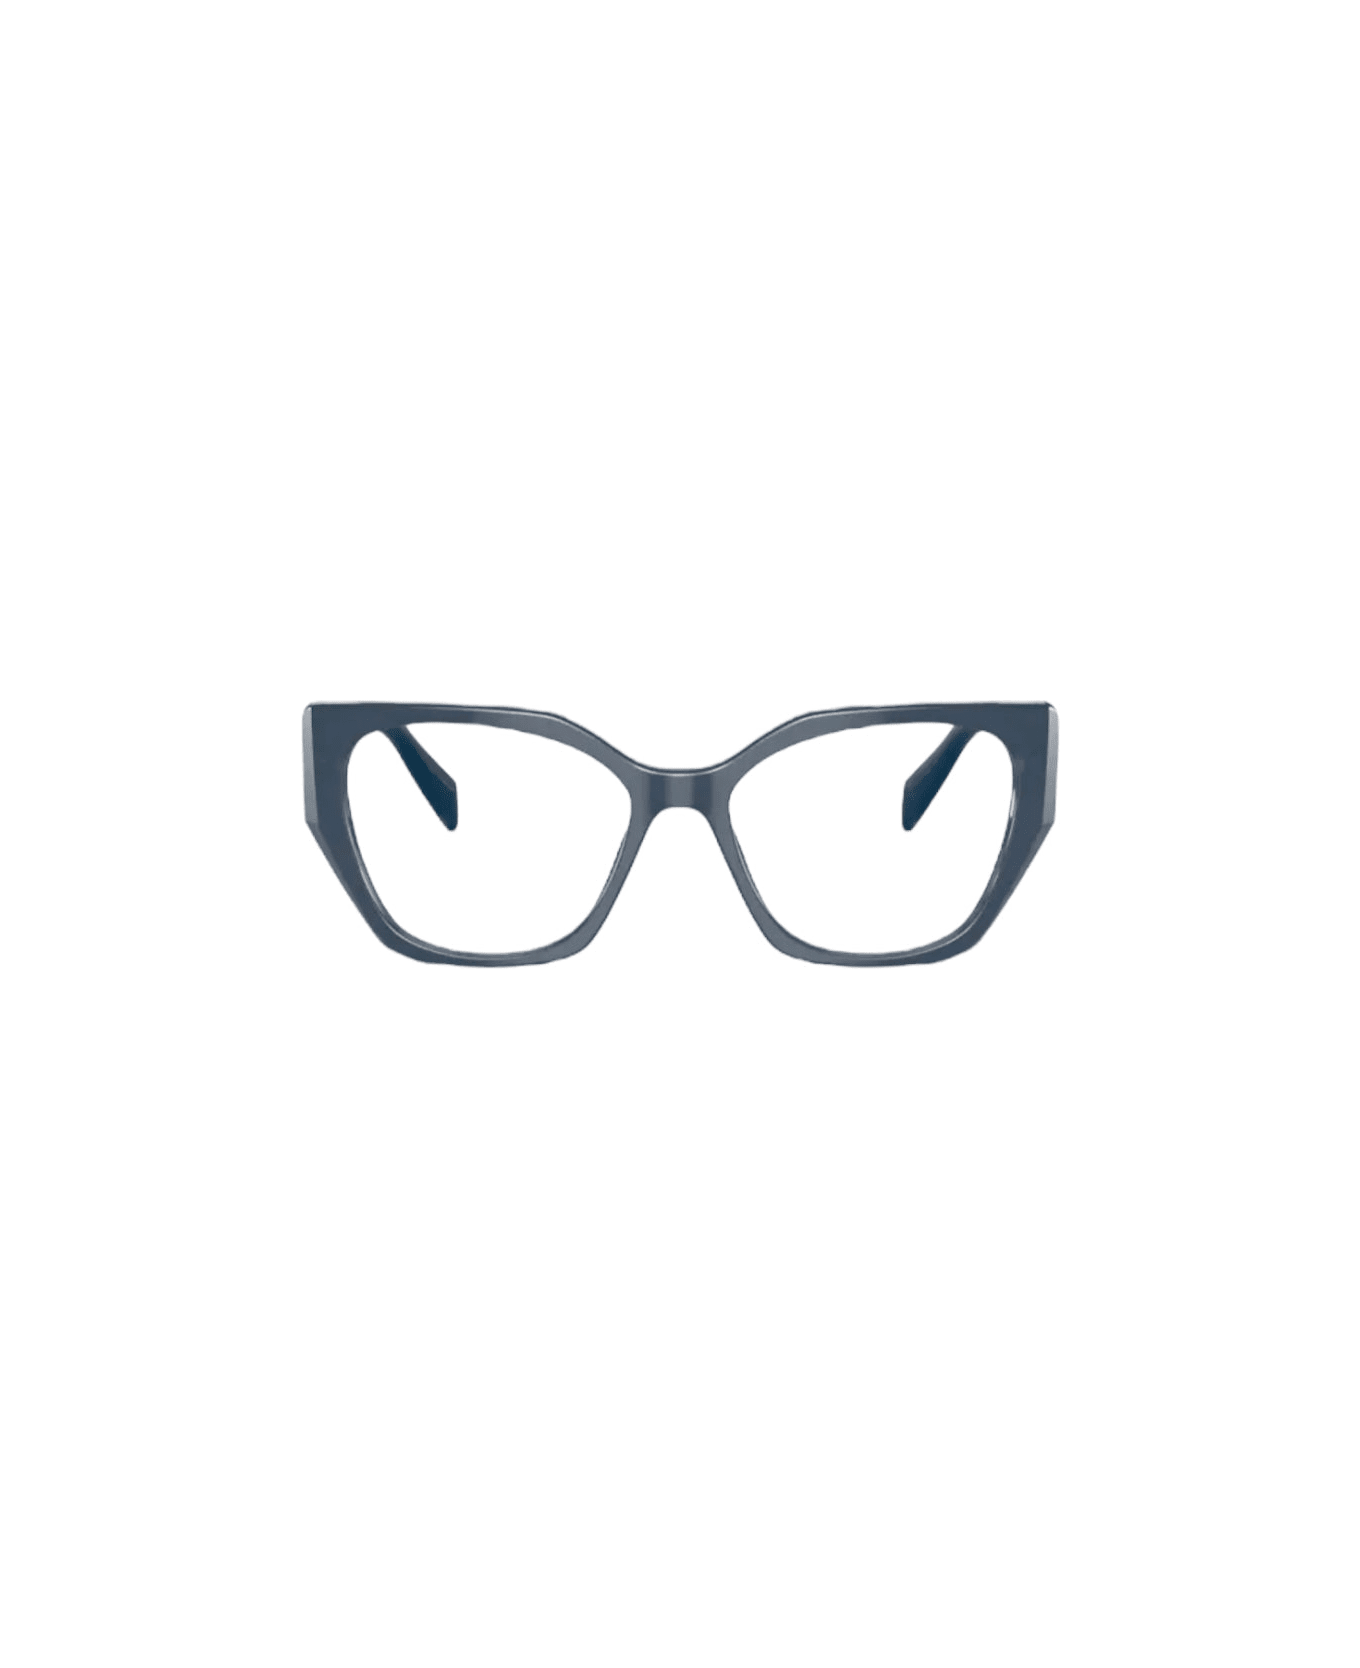 Prada Eyewear Opr 18wv Glasses